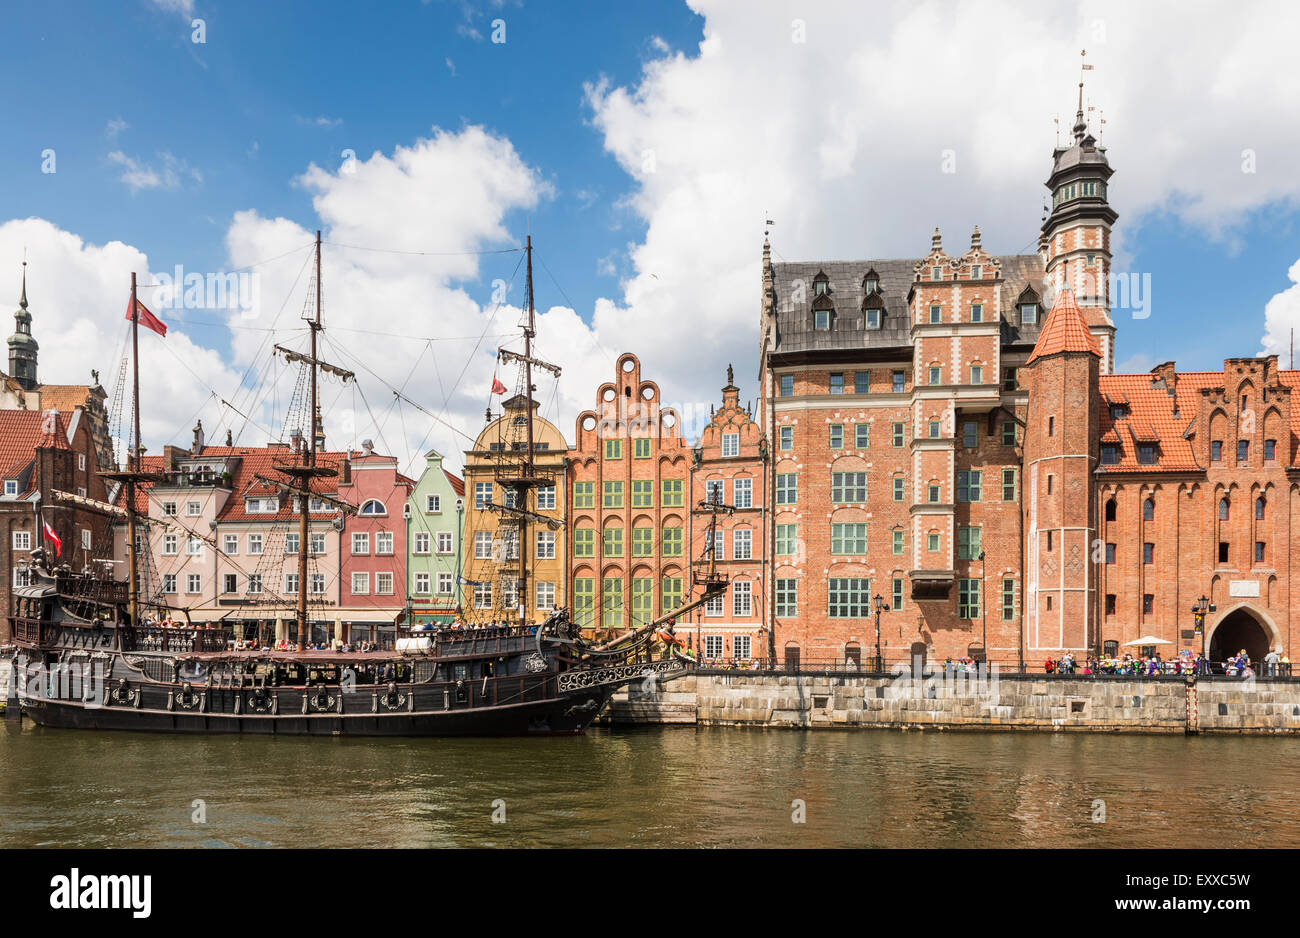 Storico di nave a vela ormeggiata in Gdansk città vecchia o Stare Miasto sulle rive del fiume Motlawa, Polonia, Europa Foto Stock